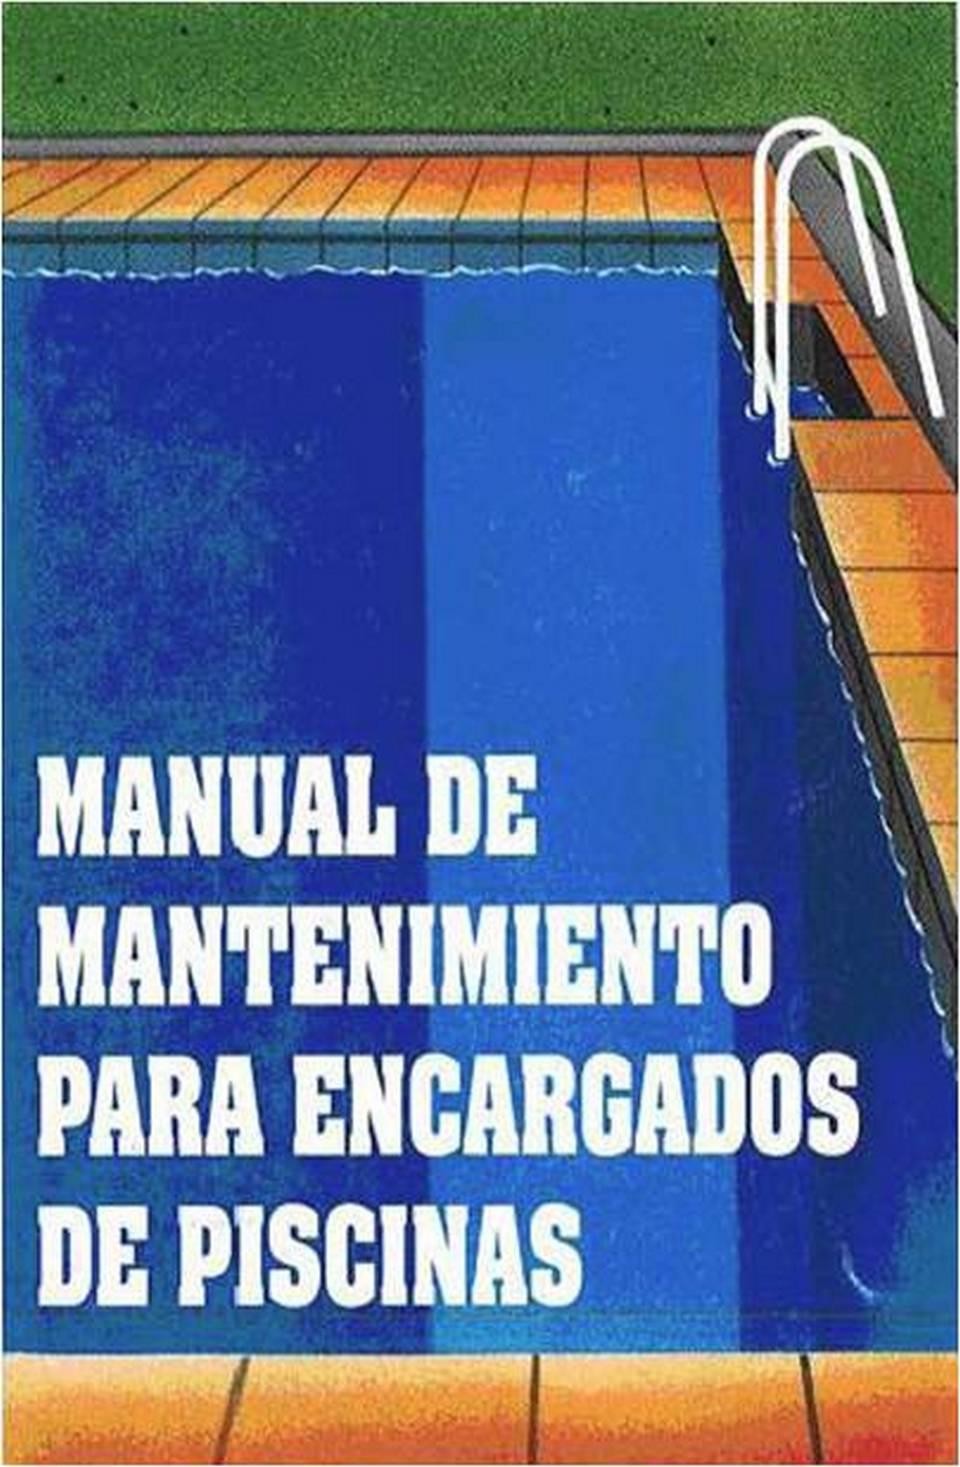 Portada de la publicación Manual de mantenimiento para encargados de piscinas